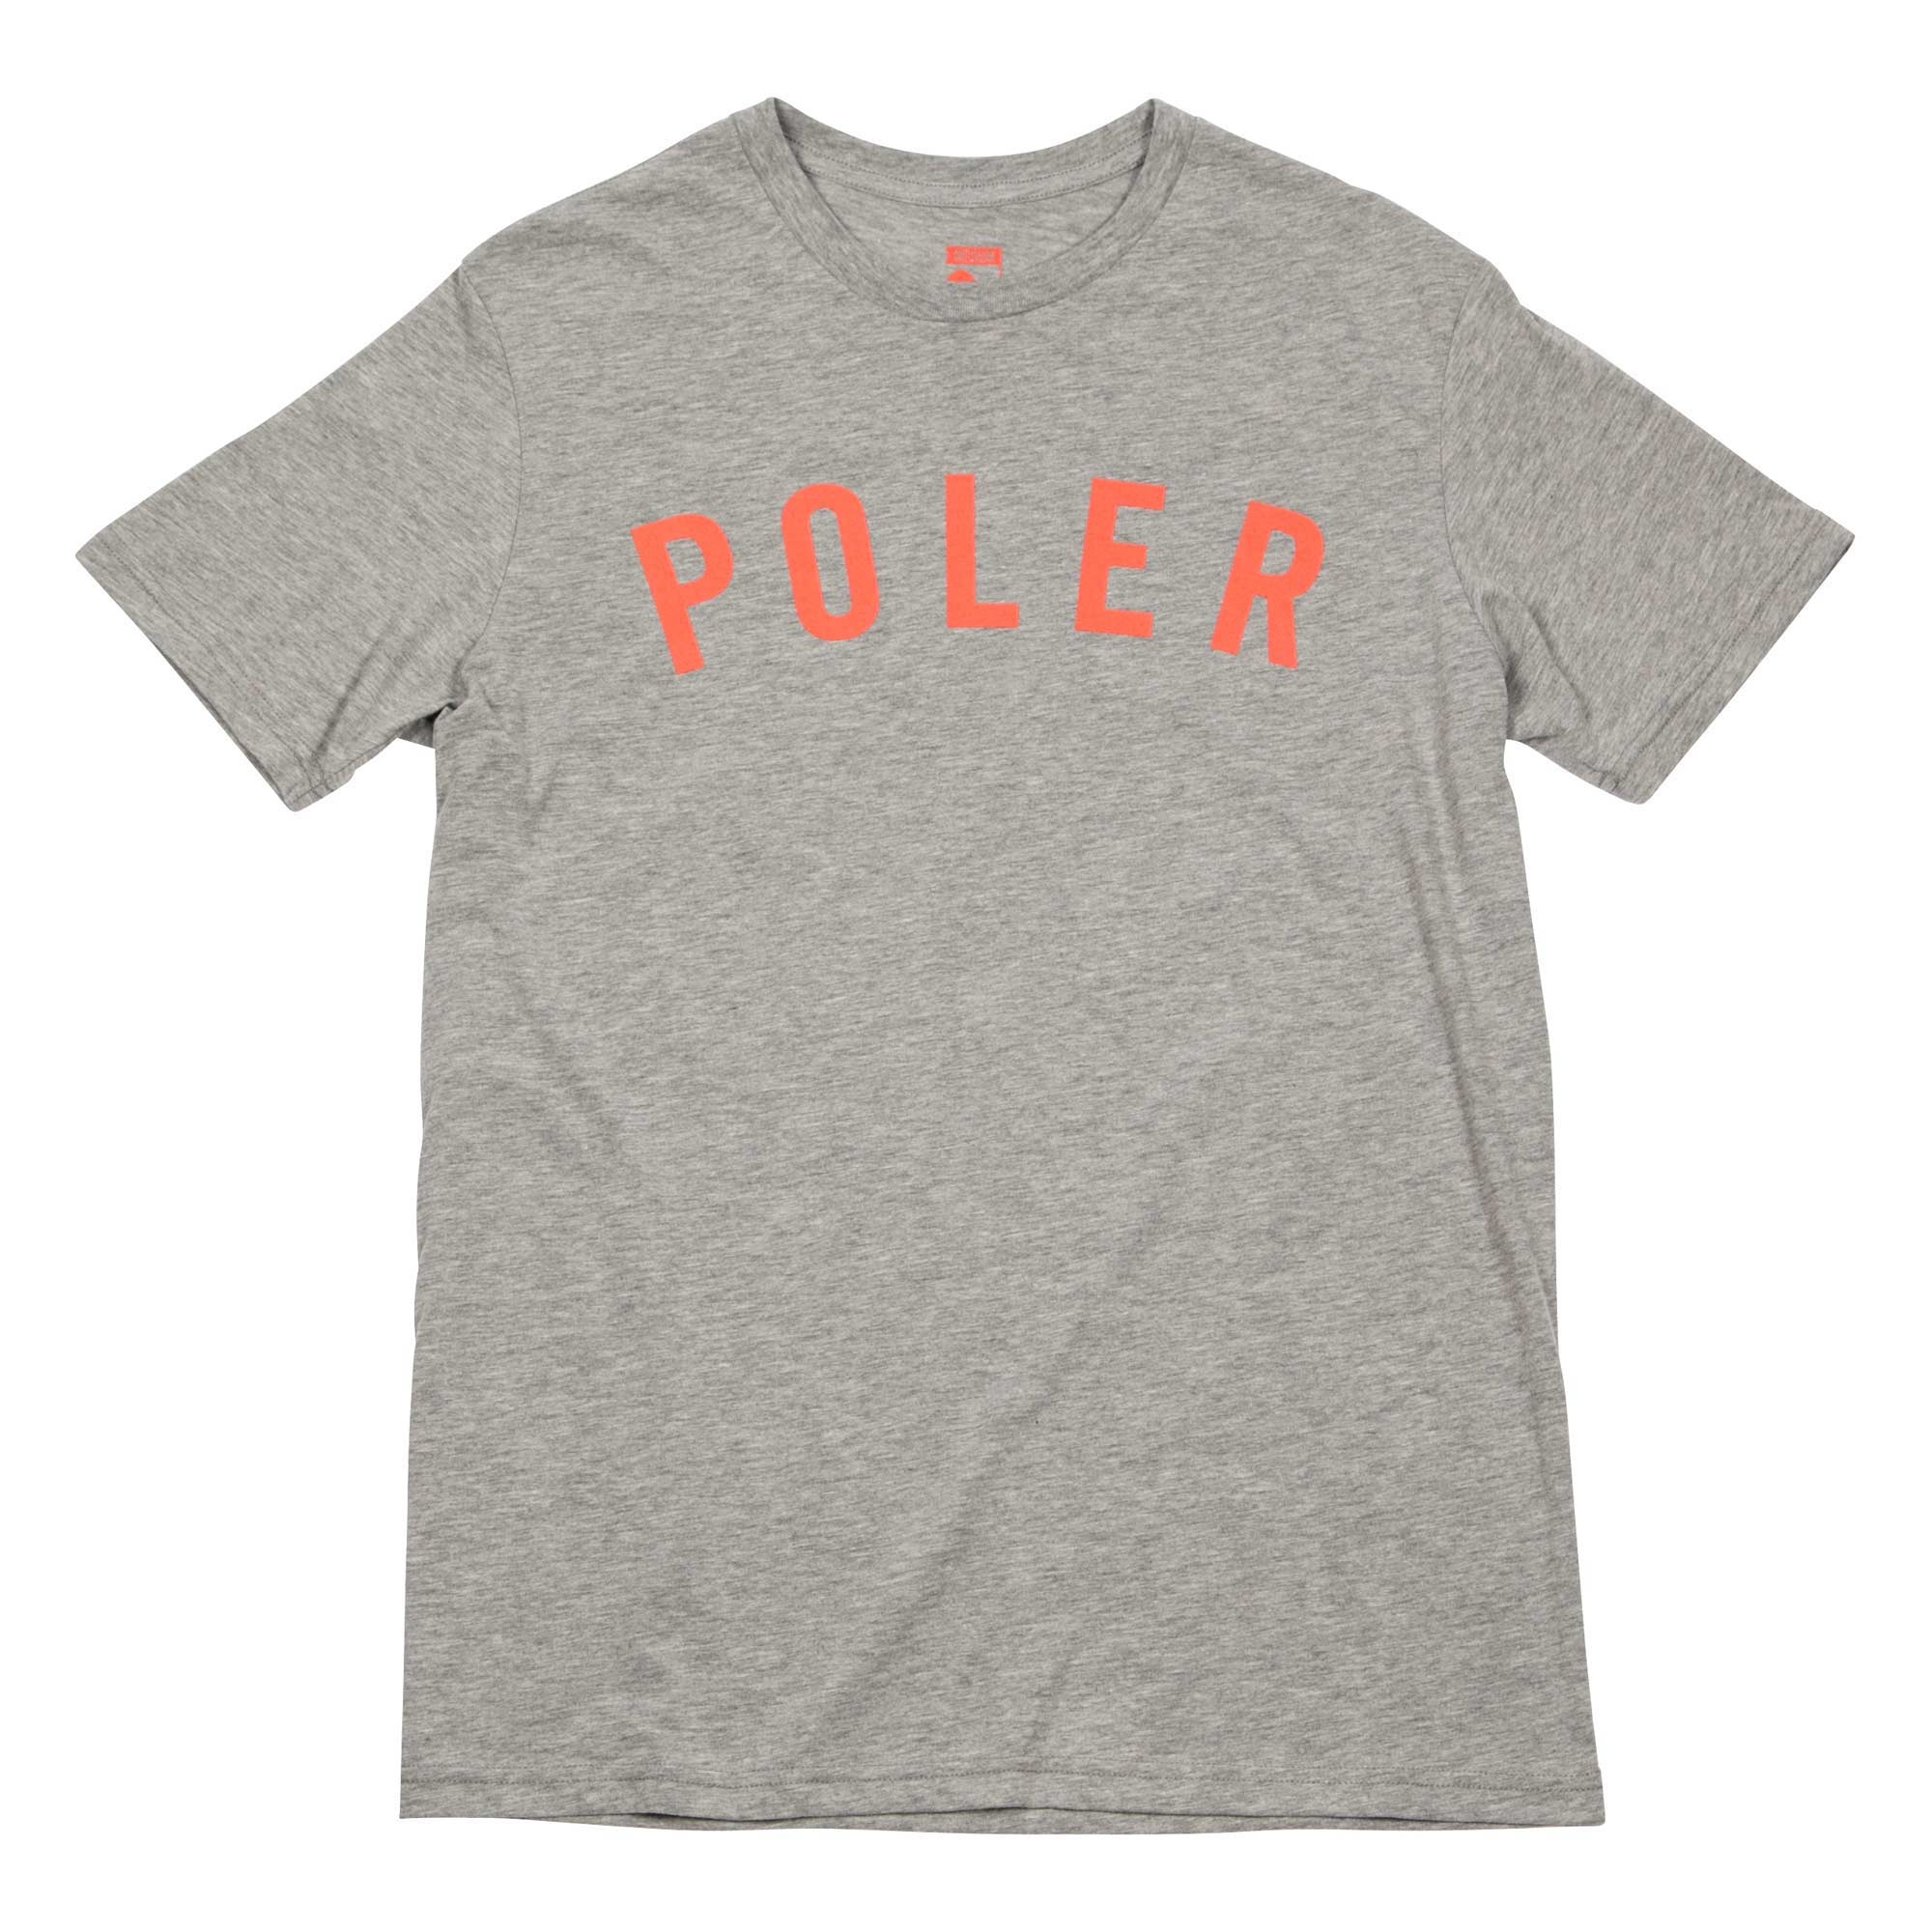 POLER T-Shirt STATE heather grey/orange